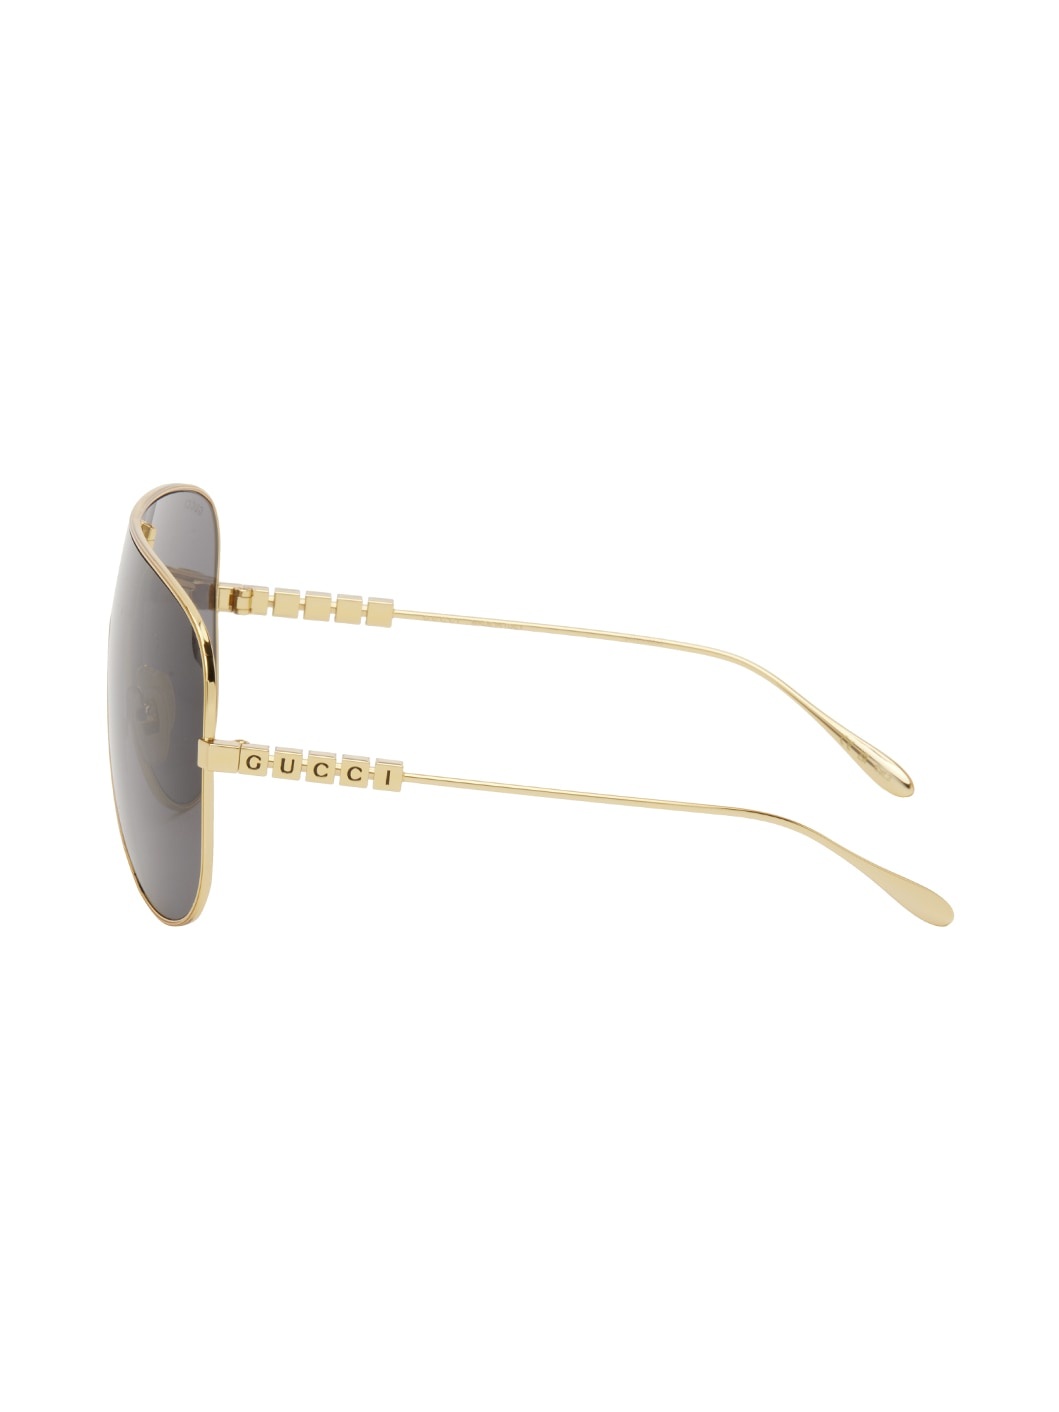 Gold Mask Sunglasses - 3